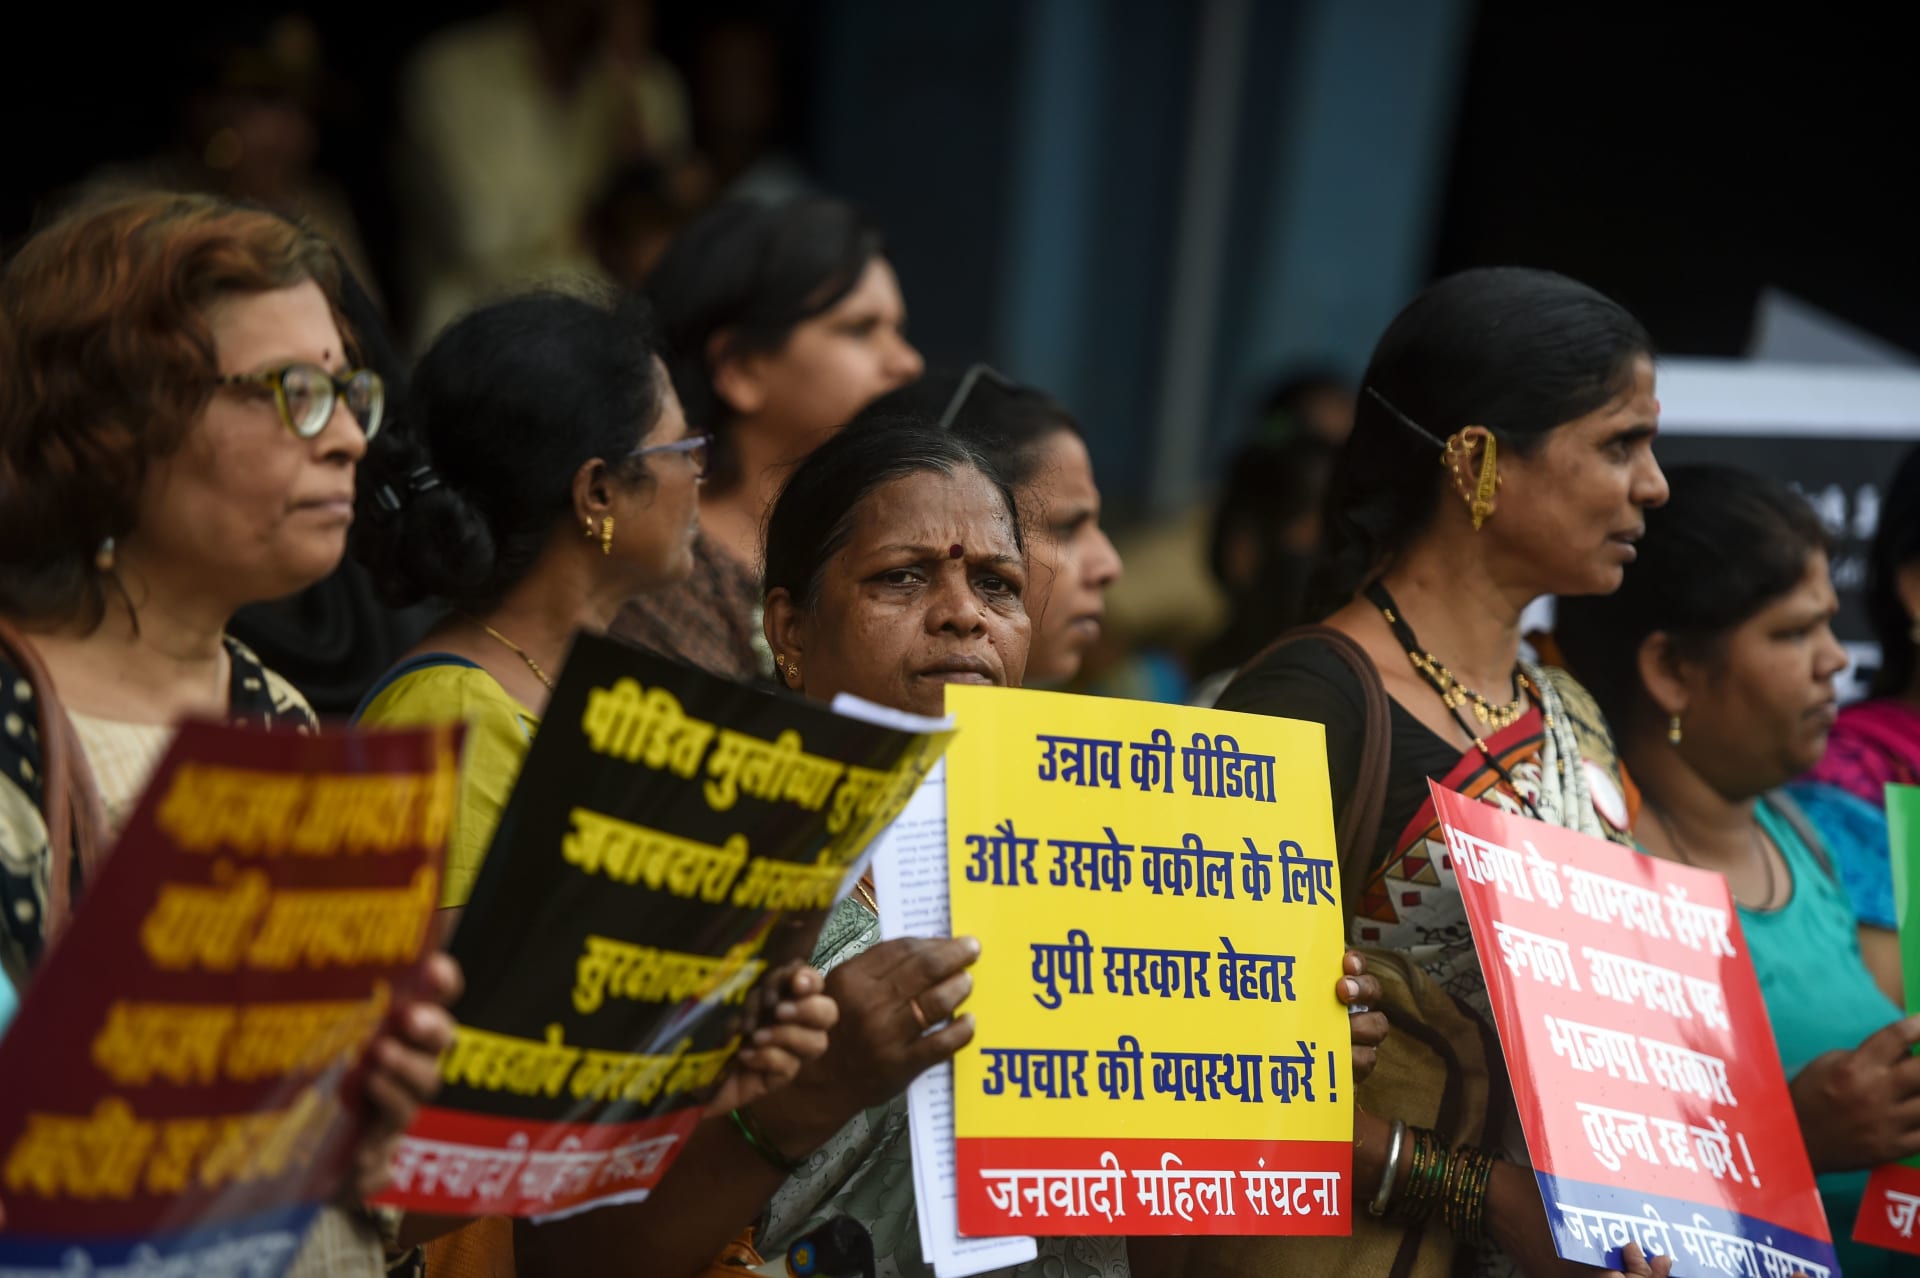 إحتجاجات ضد جرائم الإغتصاب بالهند - صورة تعبيرية